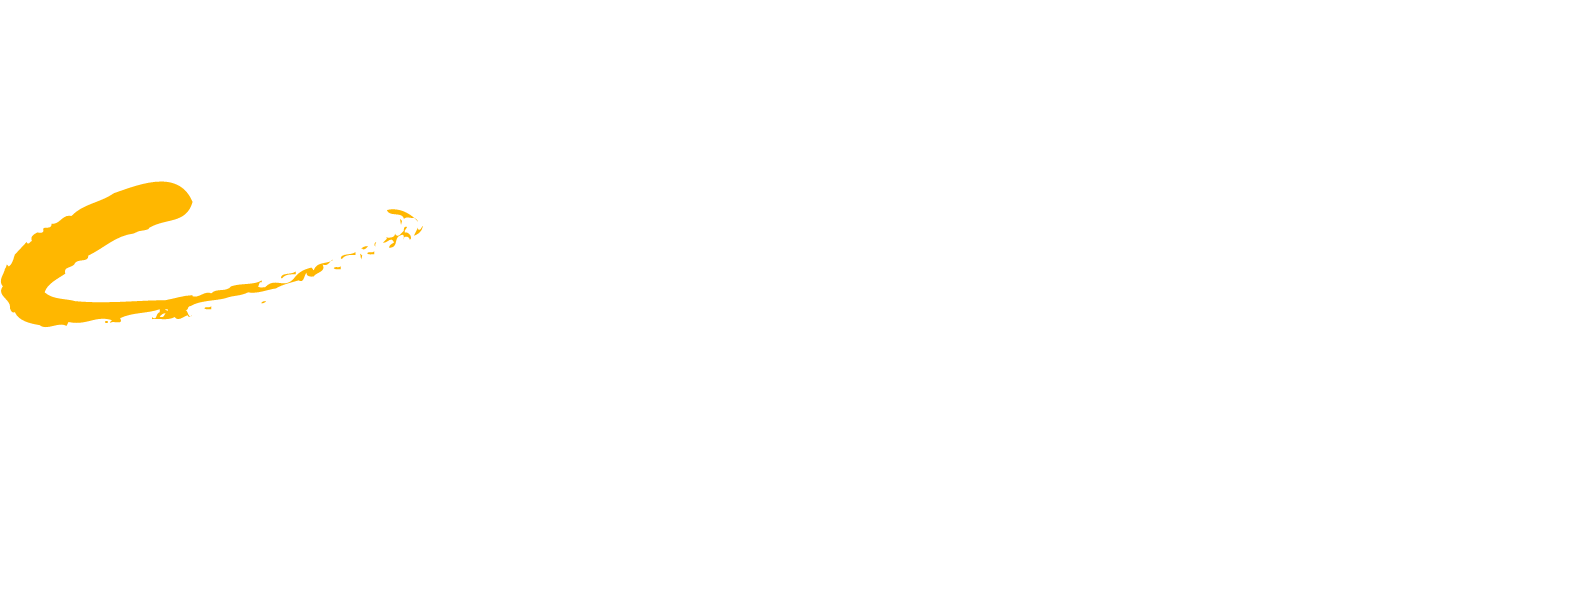 Compass Group logo grand pour les fonds sombres (PNG transparent)